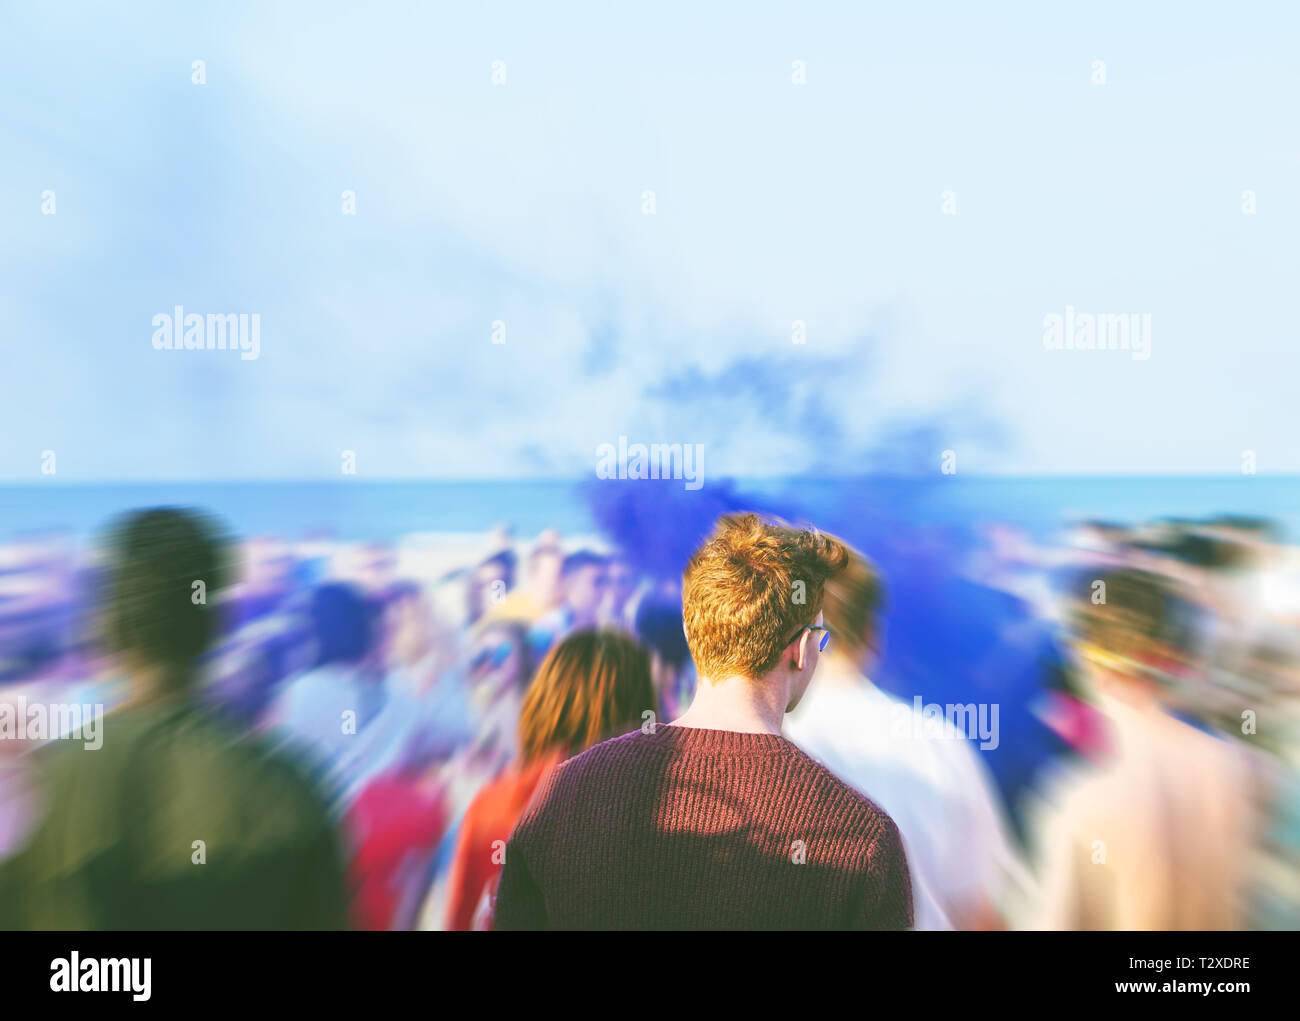 Les jeunes gens multiculturelle dancing at a beach party avec une lumière de couleur bleue de la fumée dans l'arrière-plan - Notion de partie, le plaisir et l'été Banque D'Images